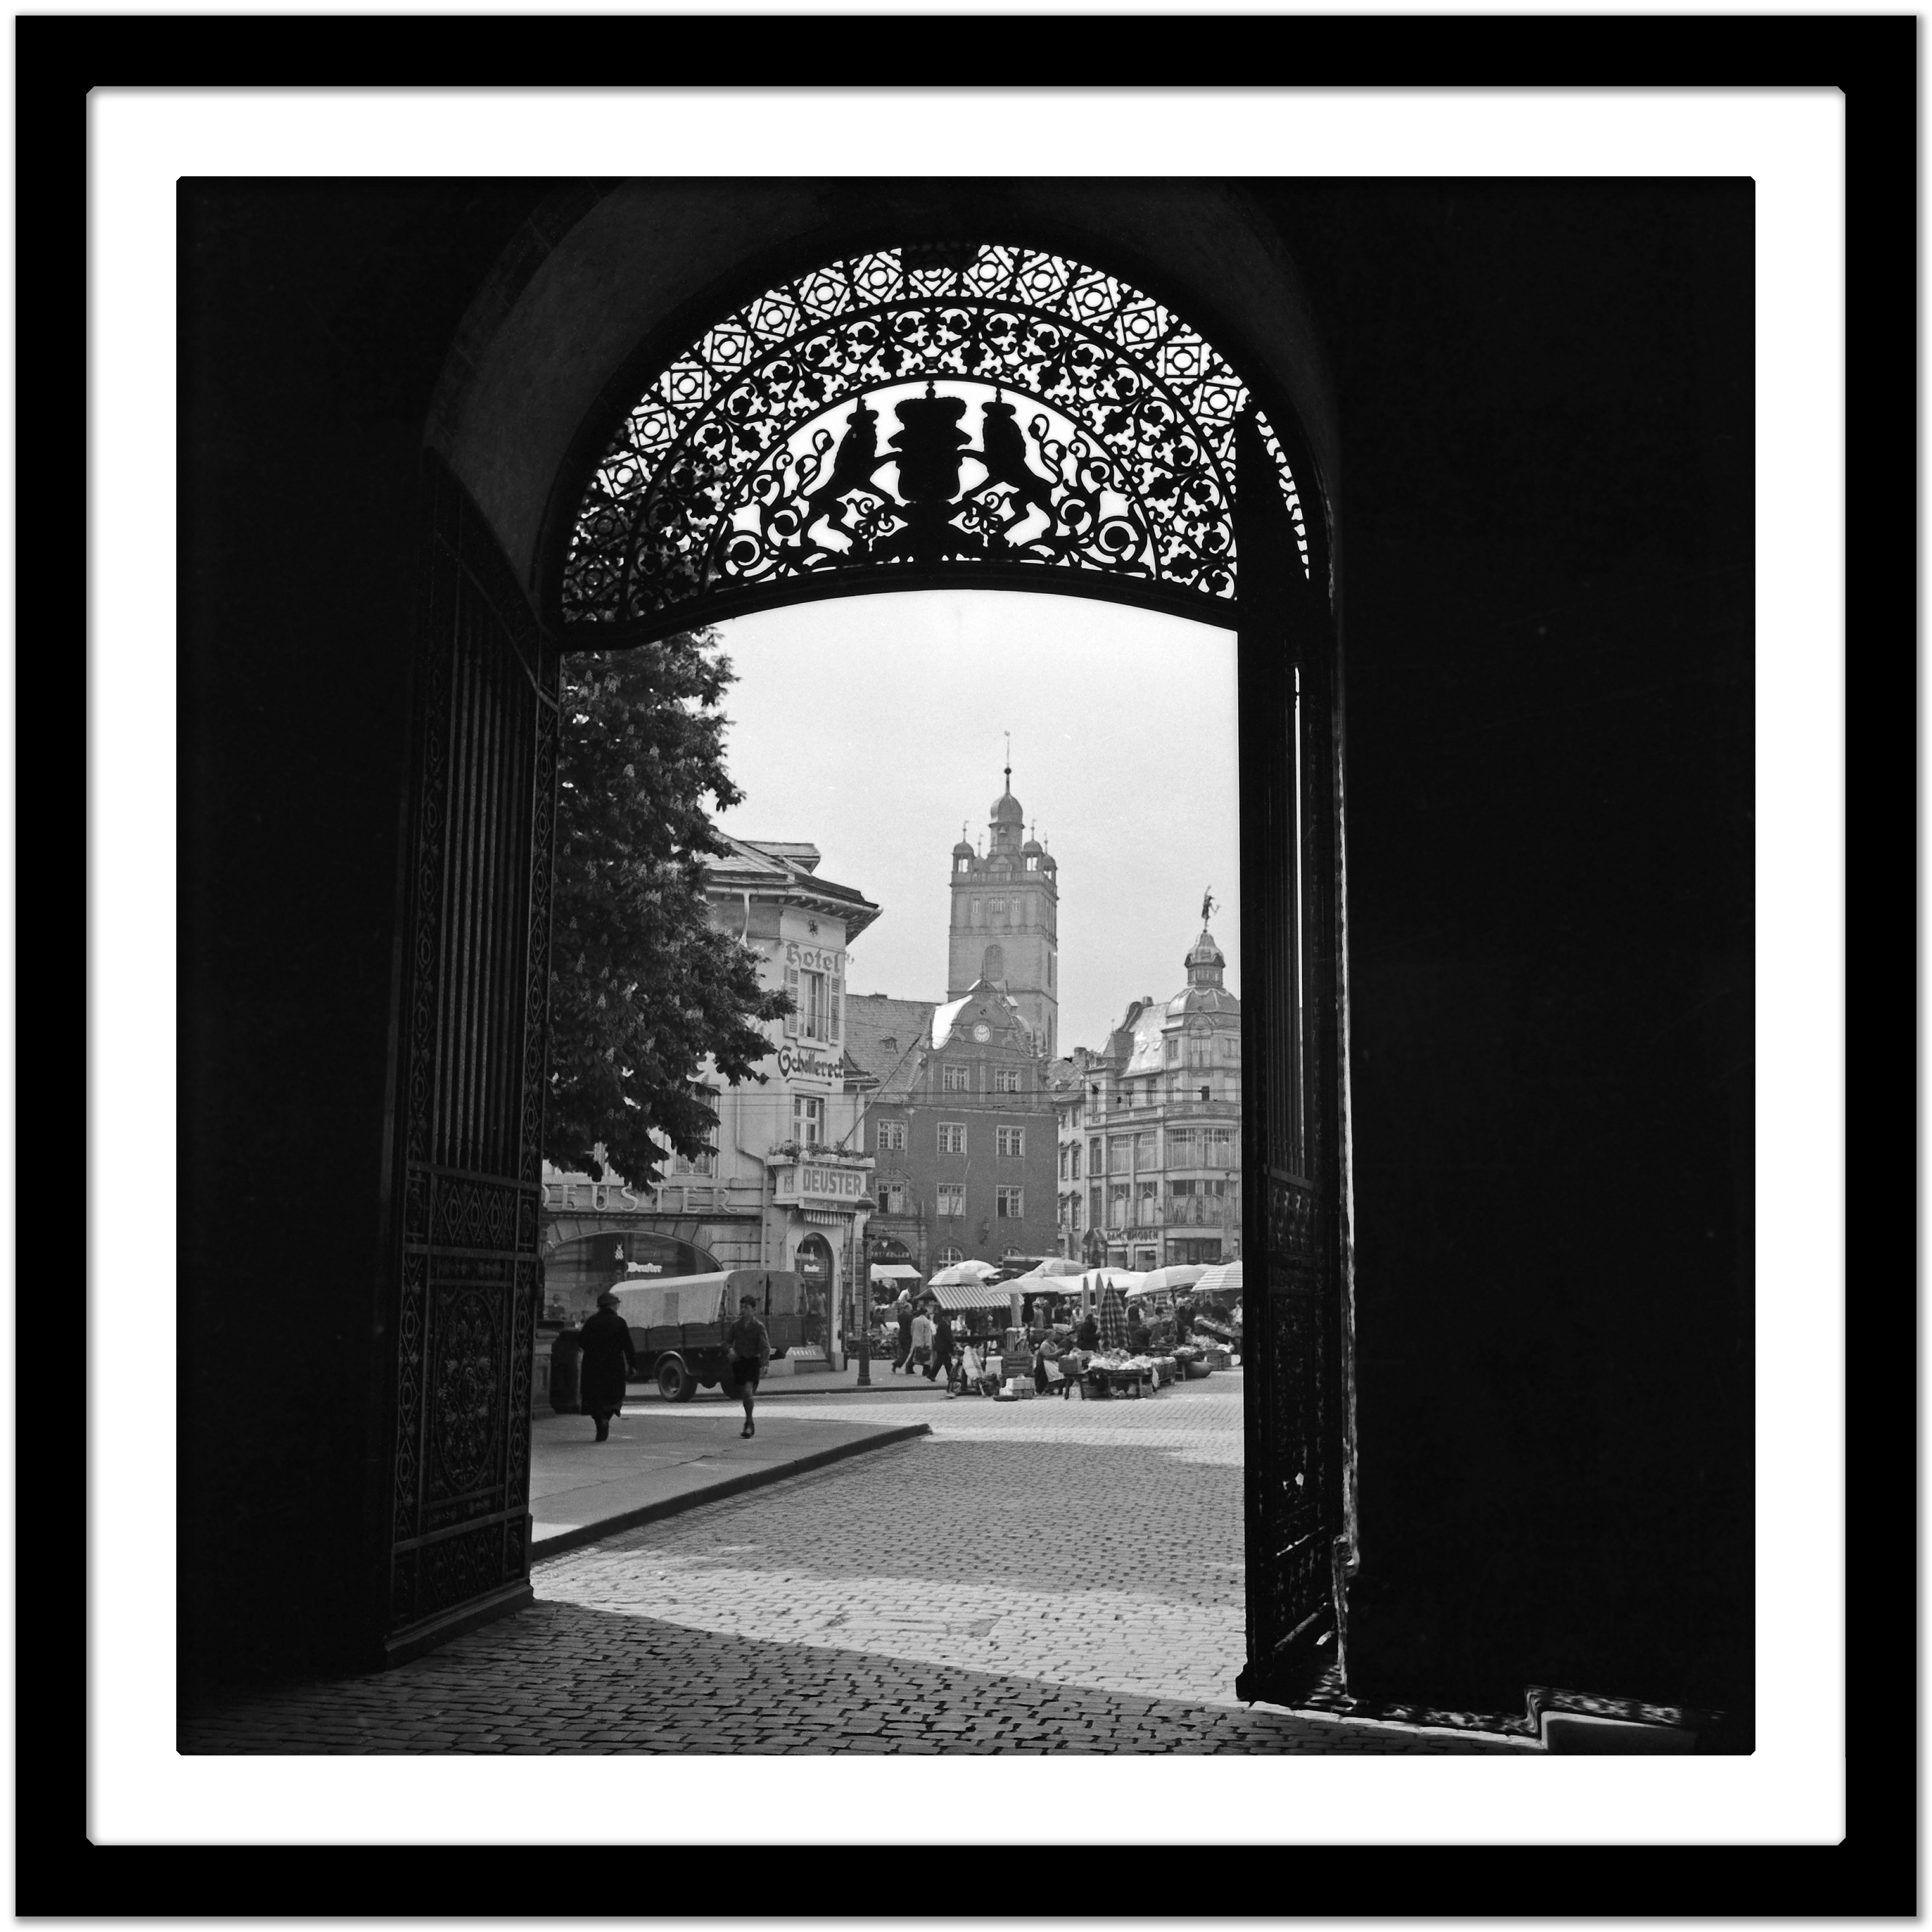 View gate Residence castle to main market Darmstadt, Deutschland 1938 Später gedruckt  (Schwarz), Black and White Photograph, von Karl Heinrich Lämmel